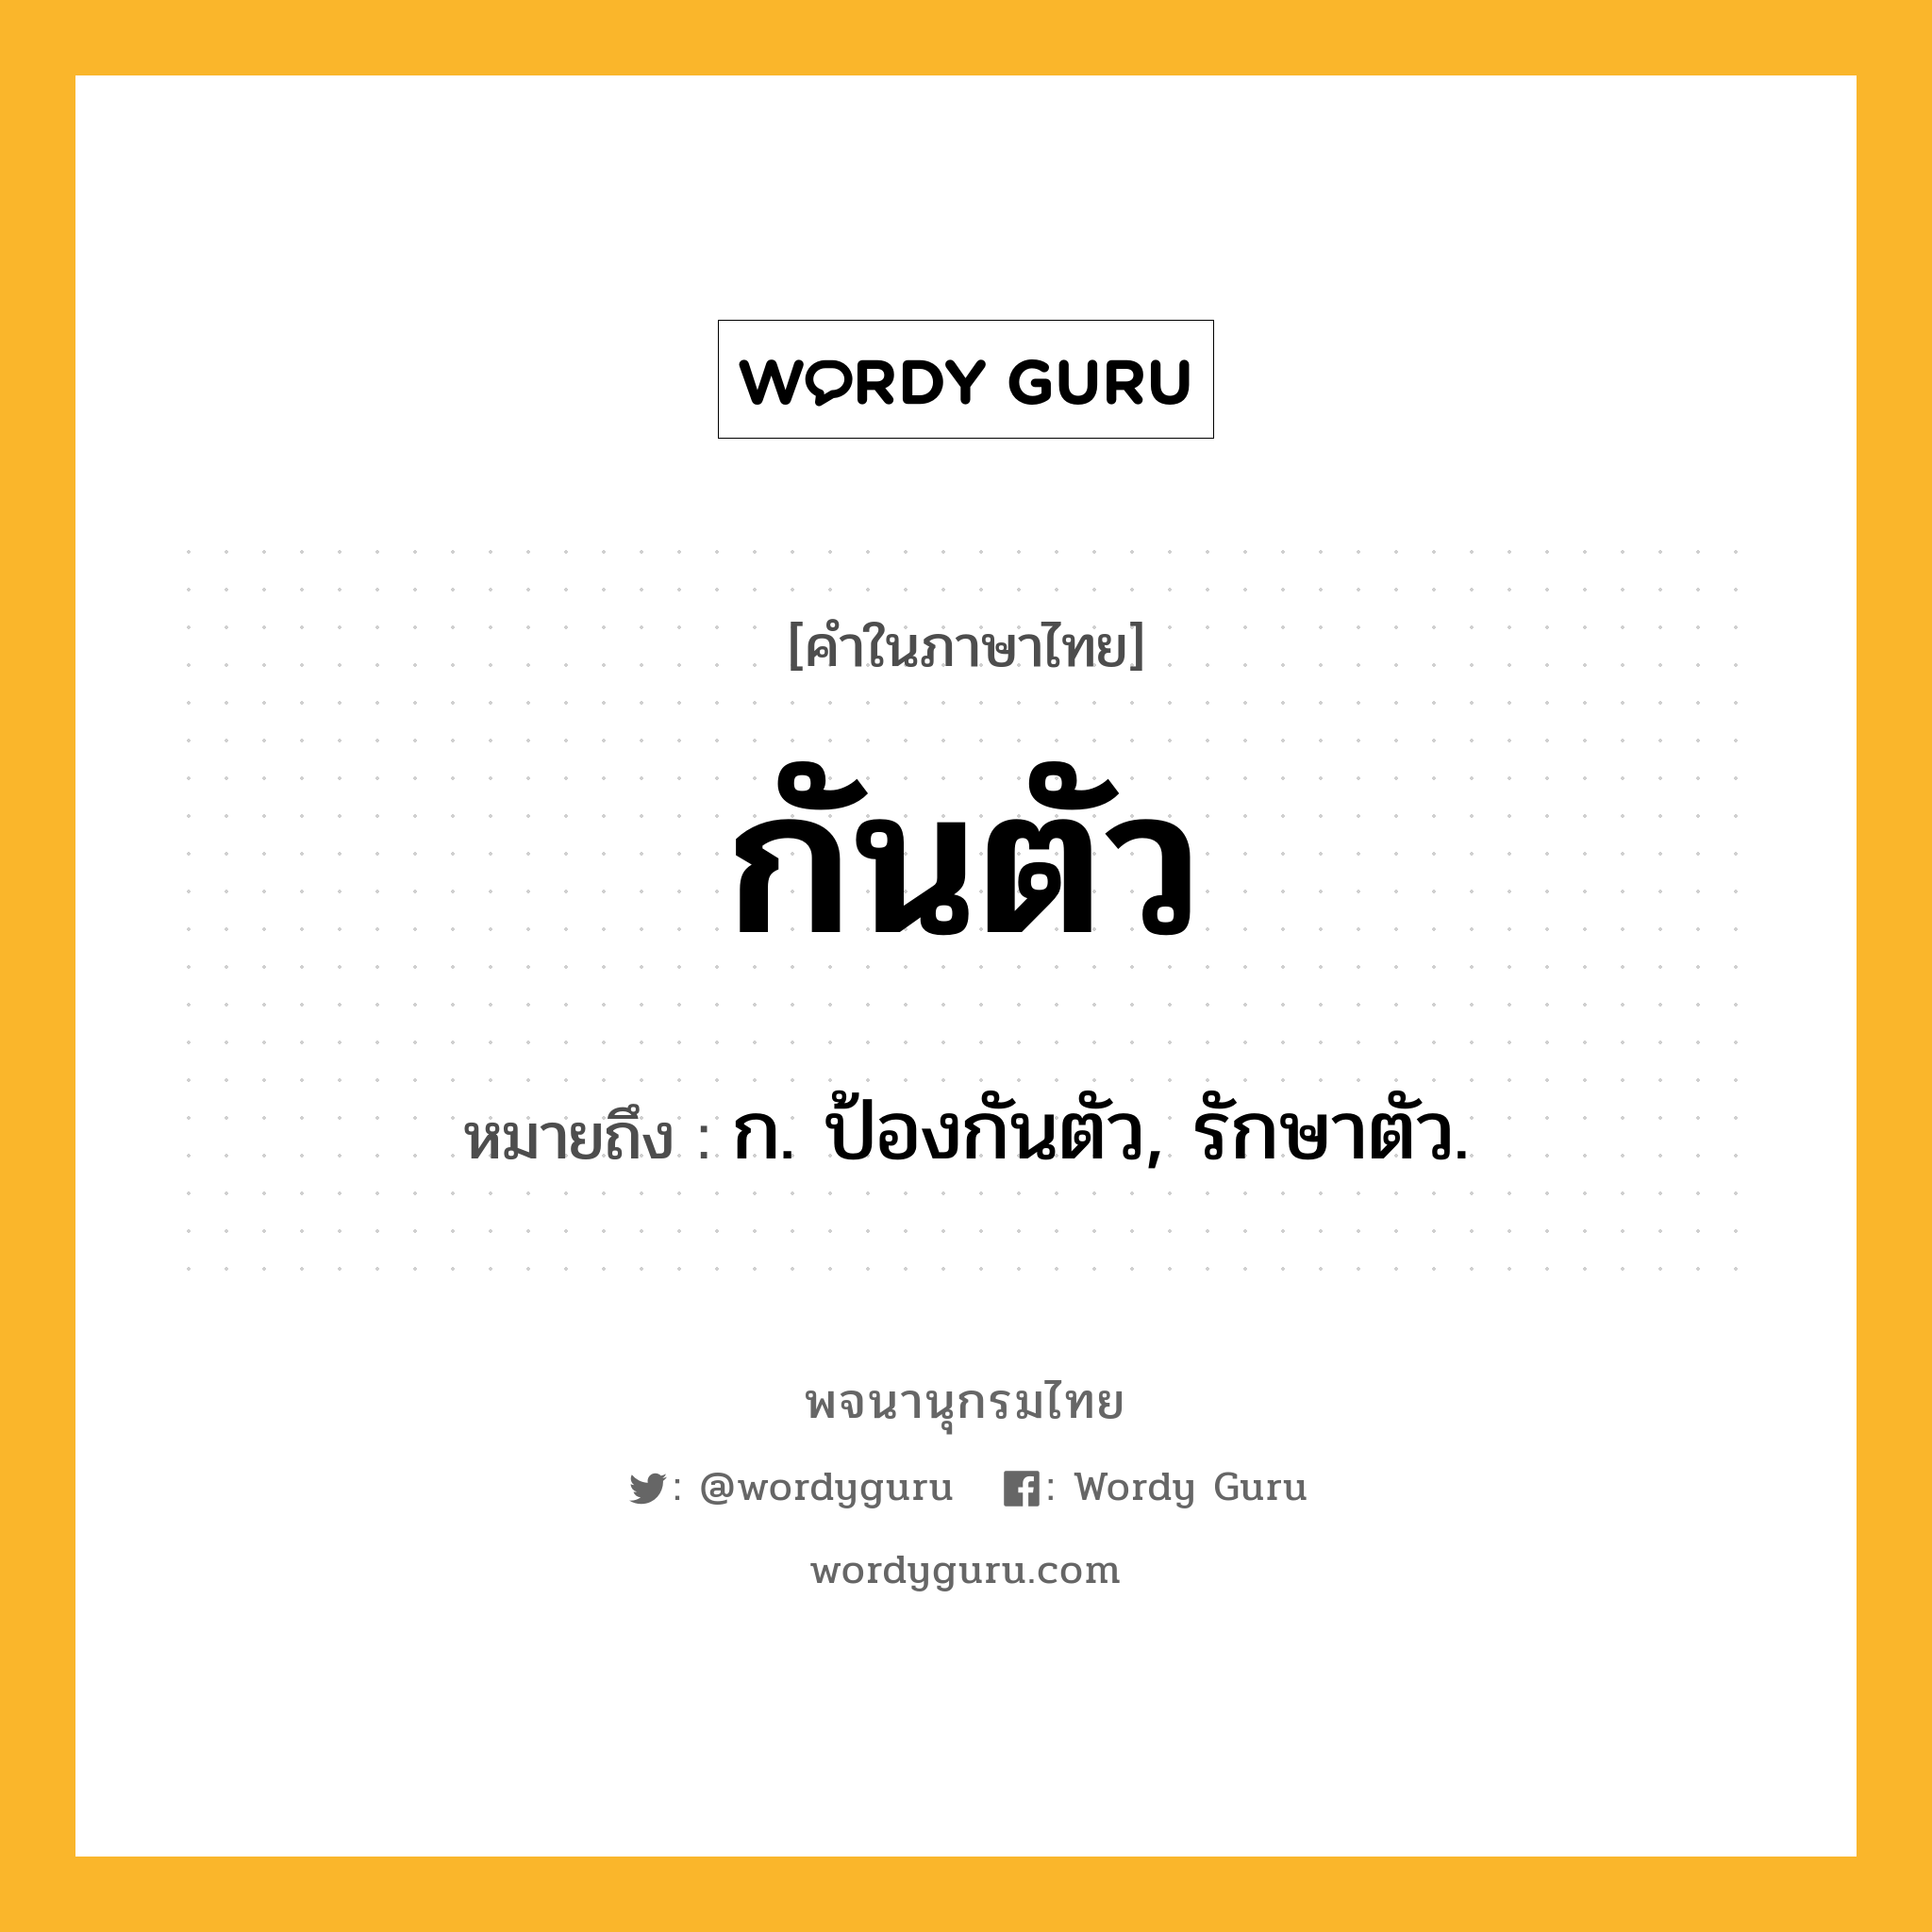 กันตัว หมายถึงอะไร?, คำในภาษาไทย กันตัว หมายถึง ก. ป้องกันตัว, รักษาตัว.